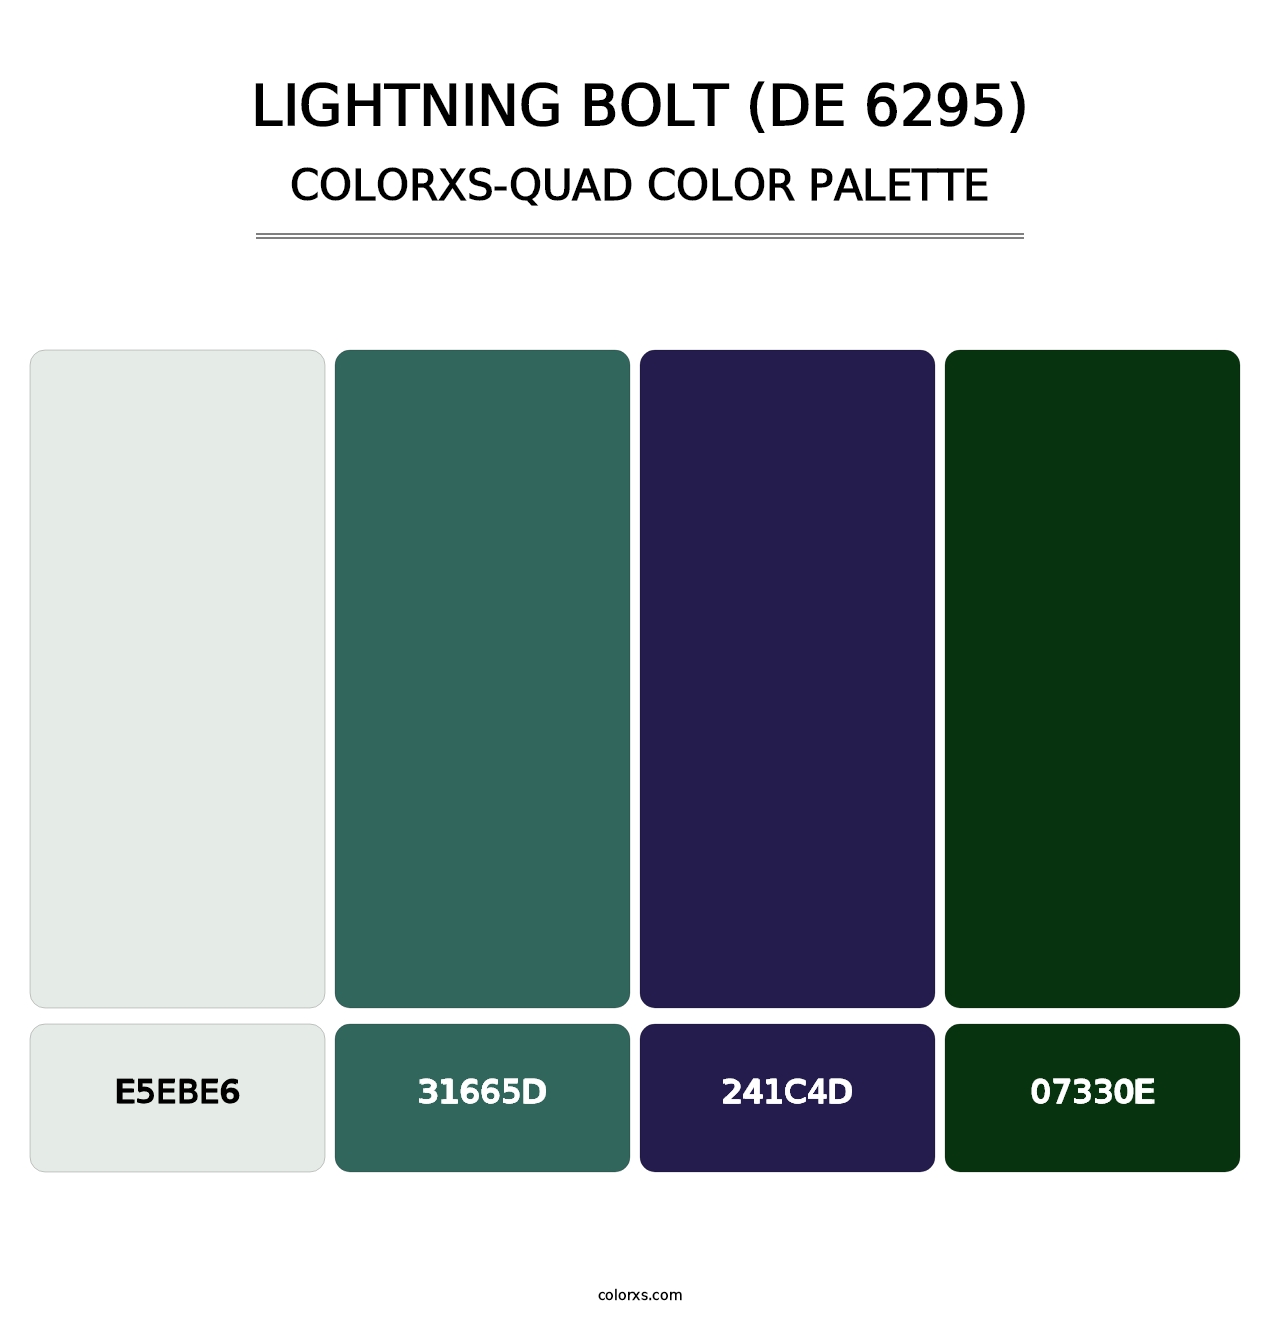 Lightning Bolt (DE 6295) - Colorxs Quad Palette